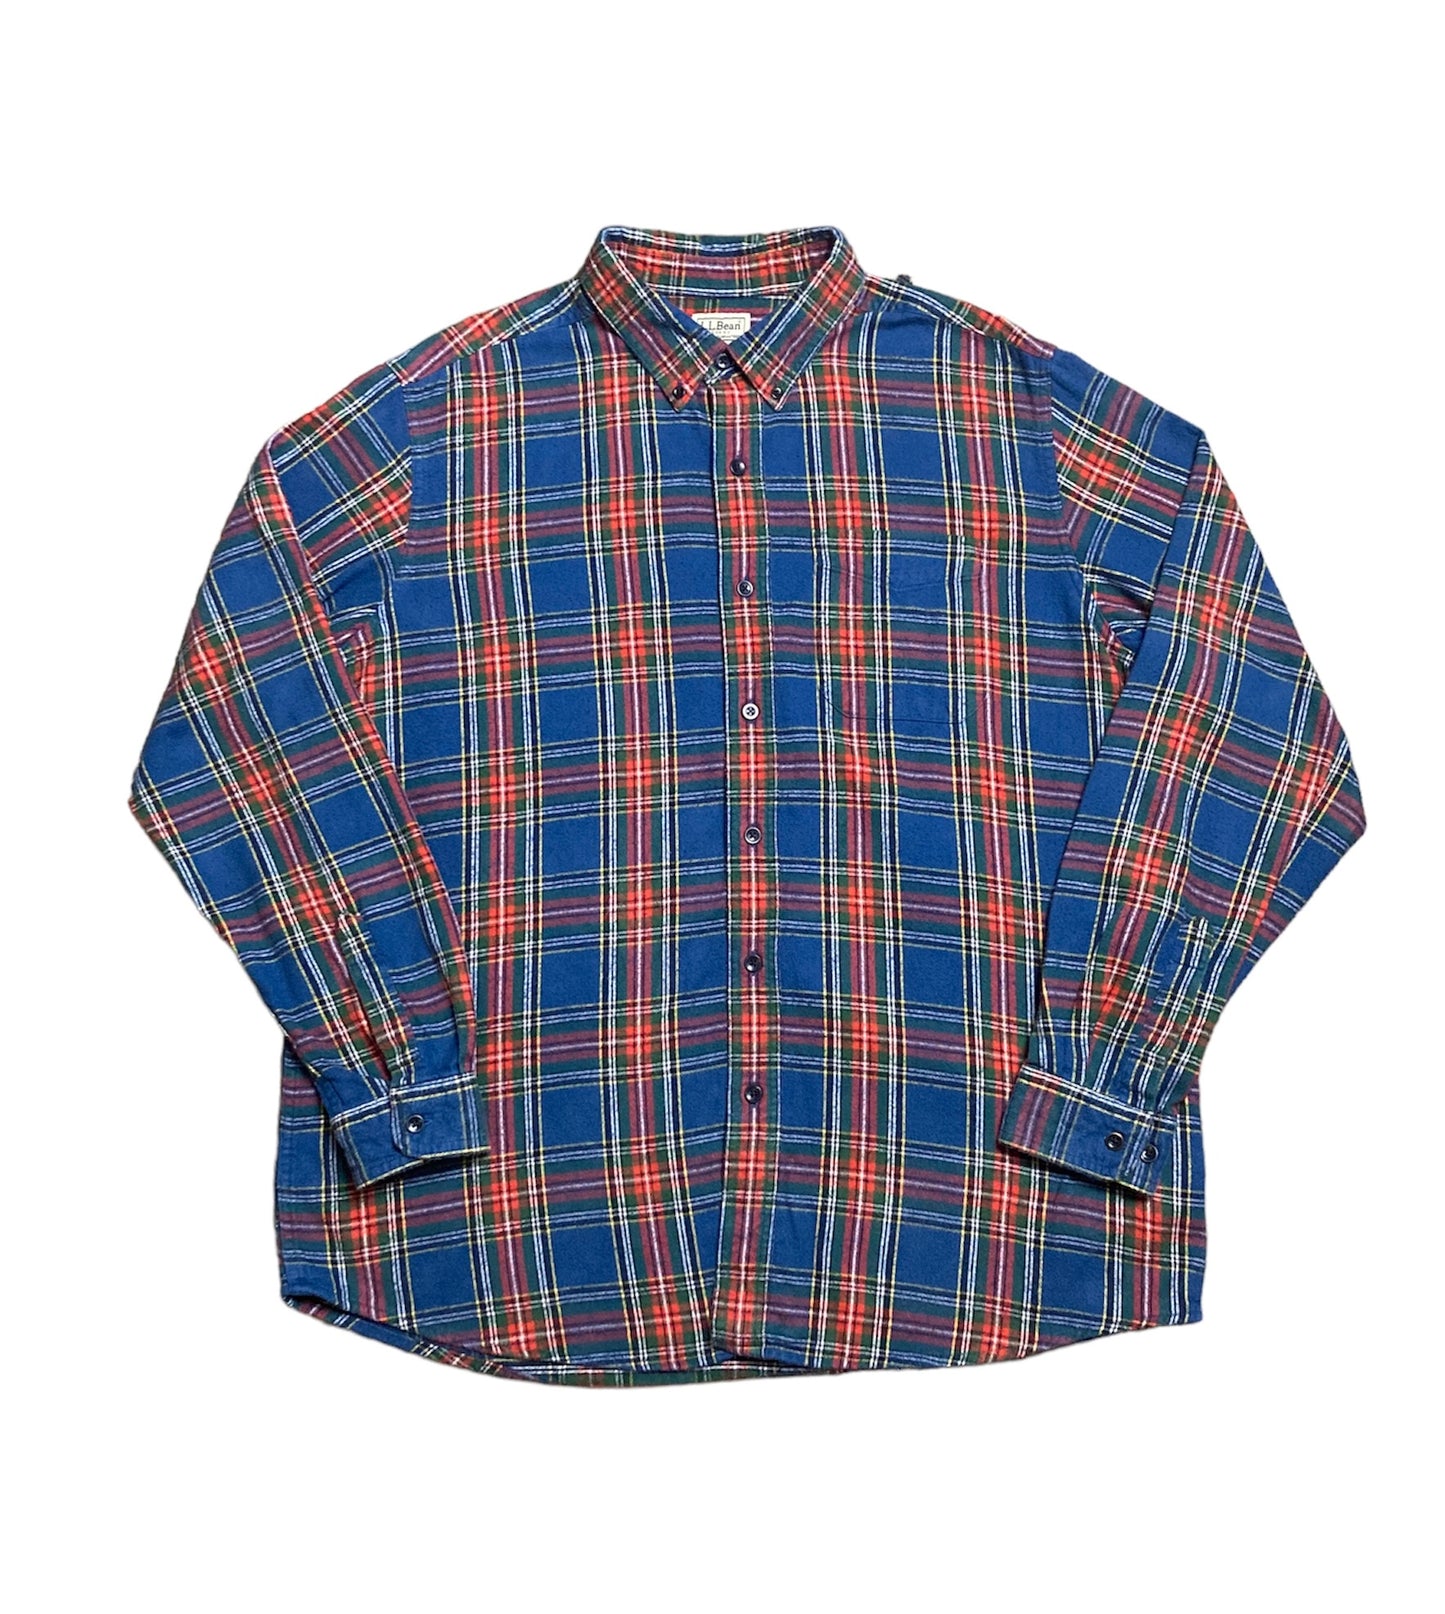 Vintage LL Bean Flannel Shirt